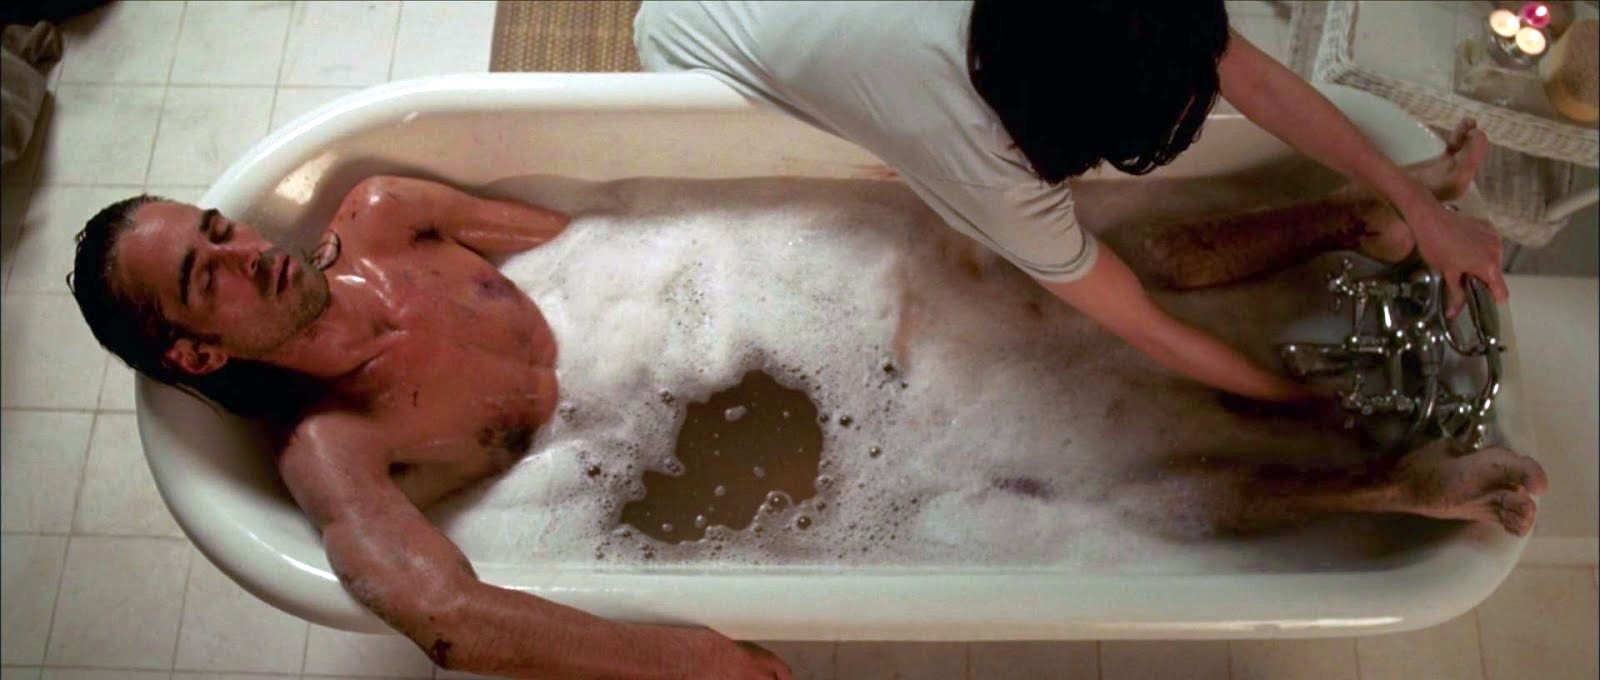 Colin Farrell nudo in "Triage" (2009) .